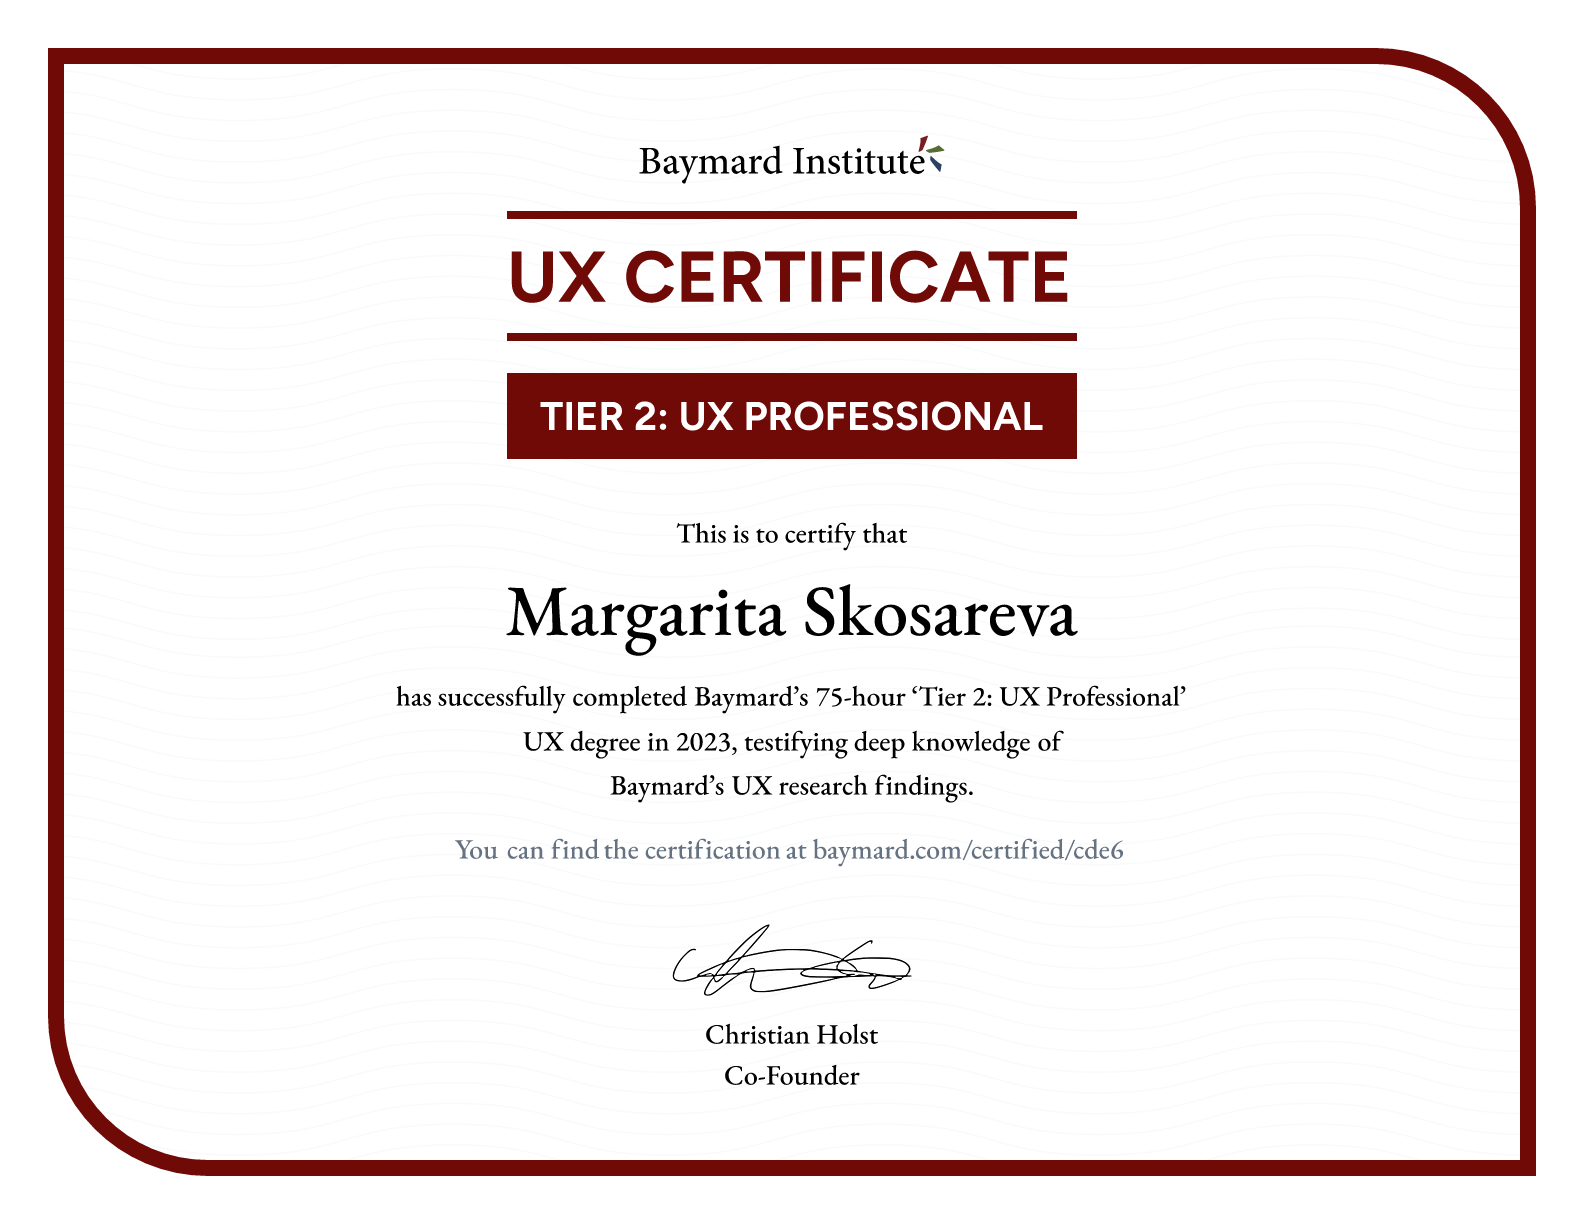 Margarita Skosareva’s certificate